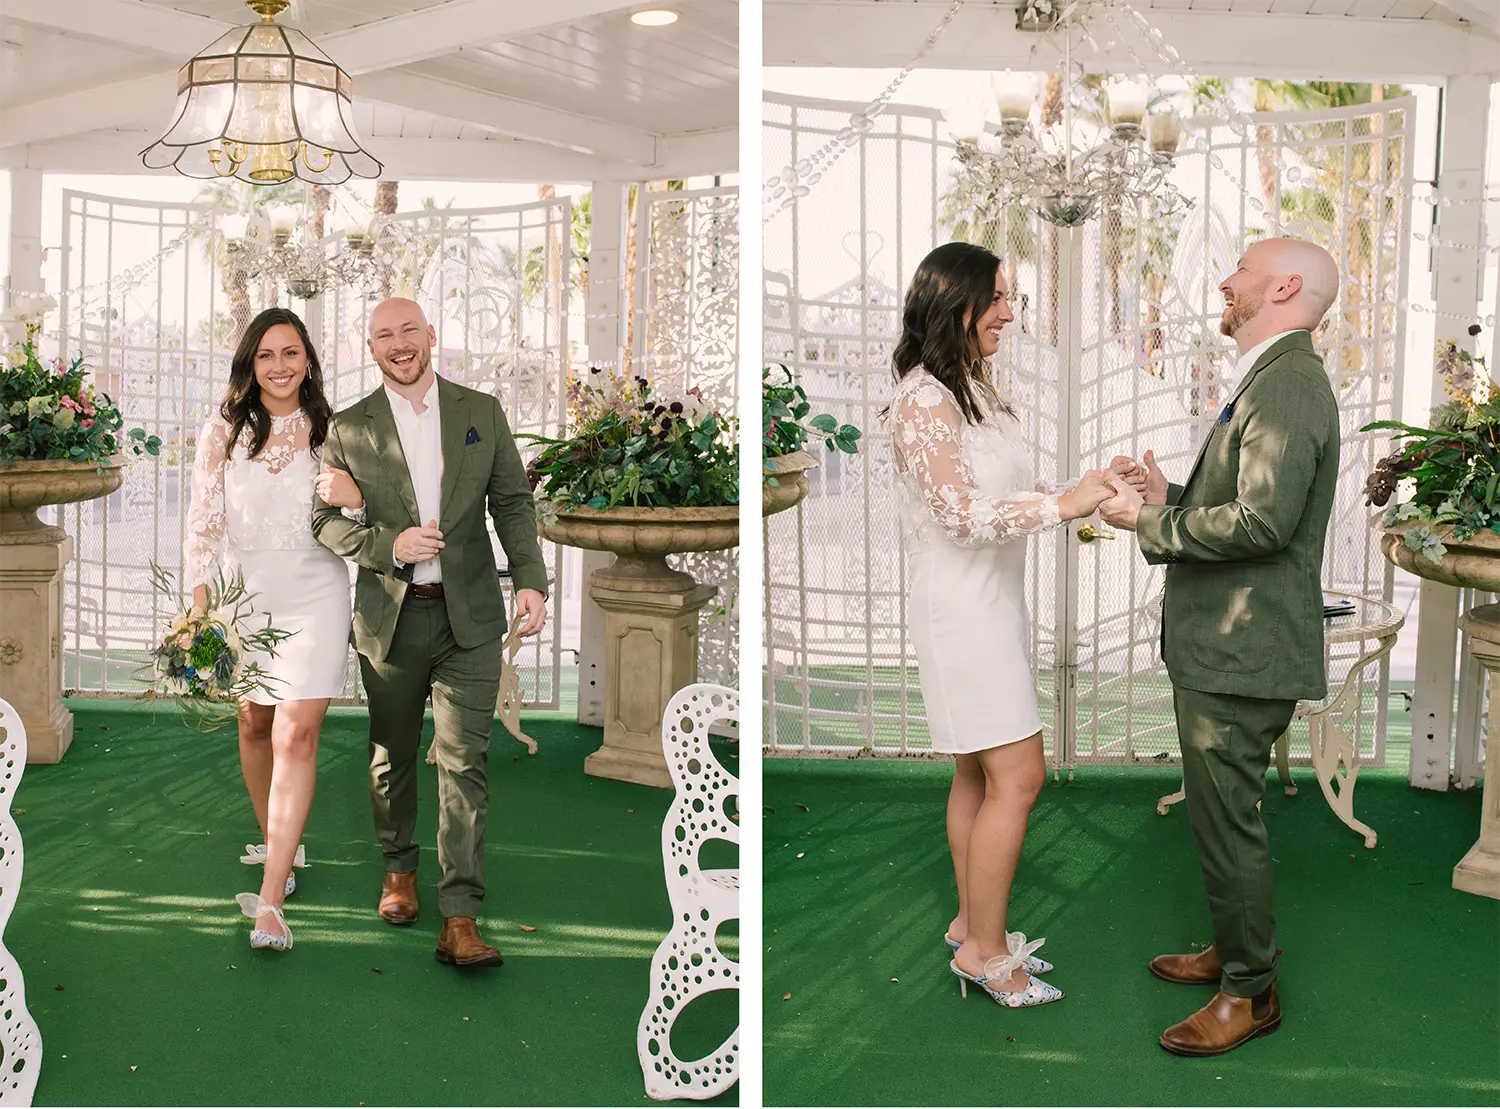 A little white wedding chapel gazebo ceremony 0006 - las vegas elopement